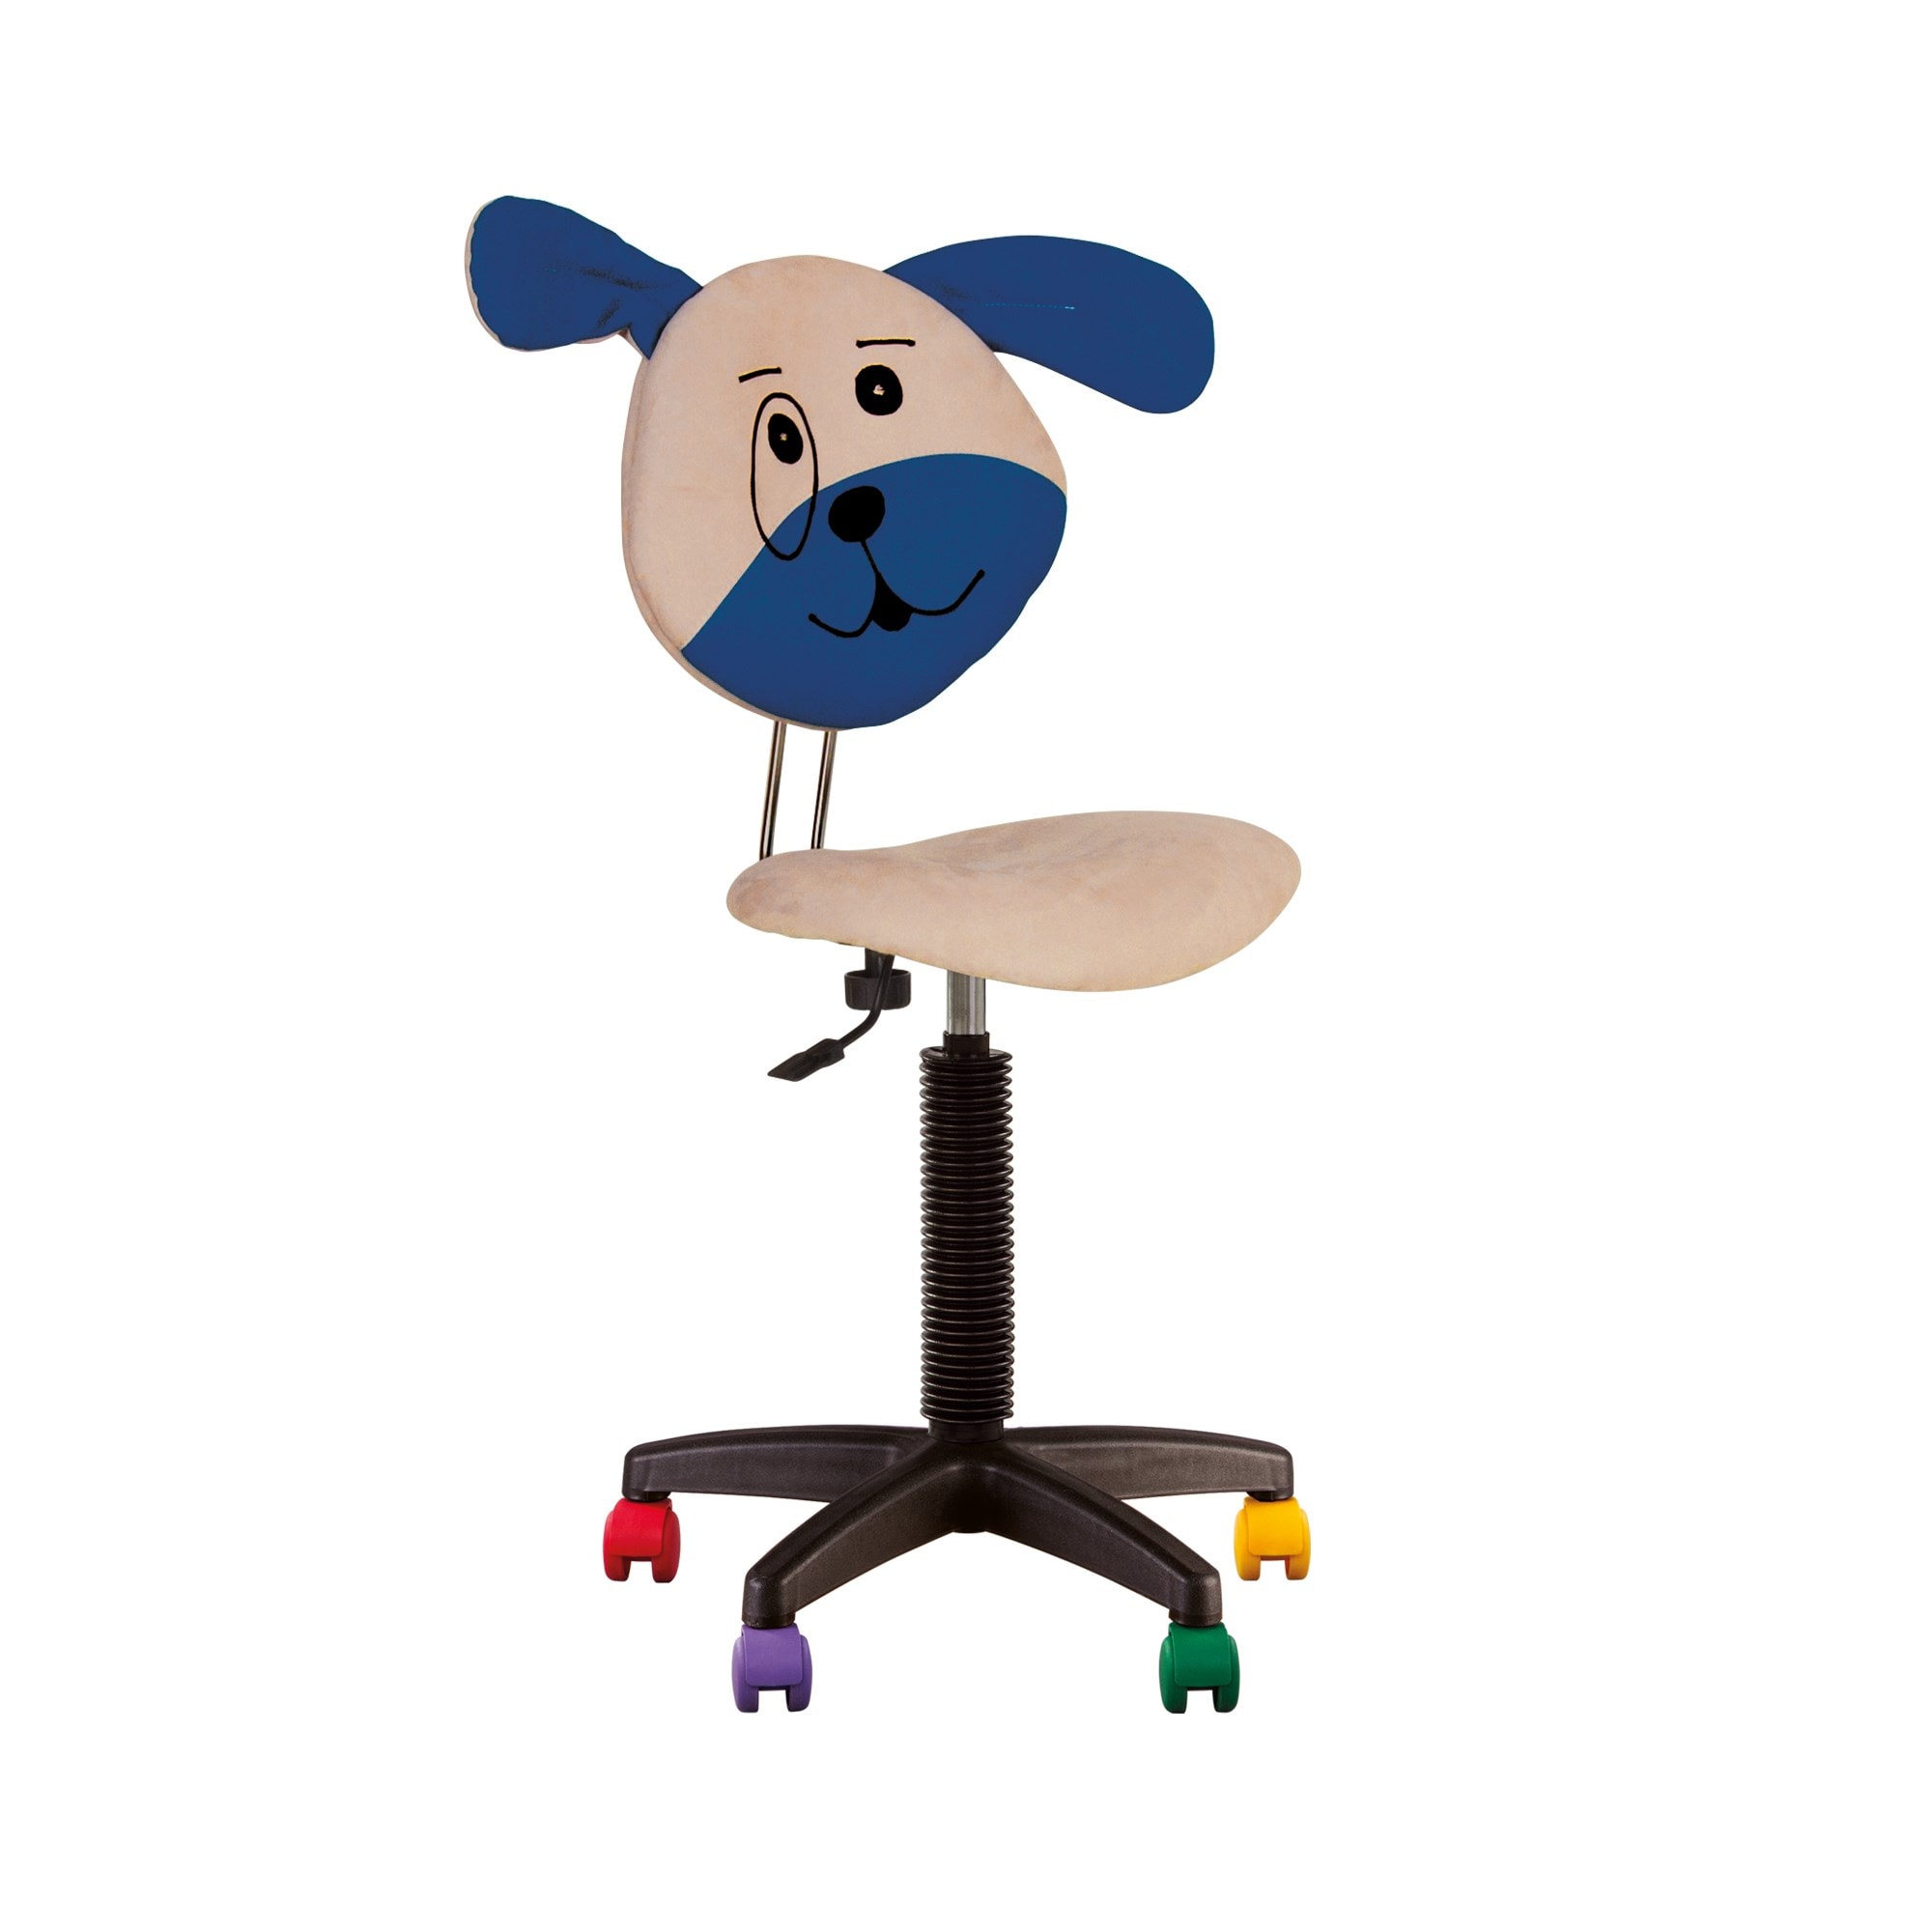 Fauteuil jouet chien, chaise de bureau pour enfant. Beige. CHAISE EXPERT